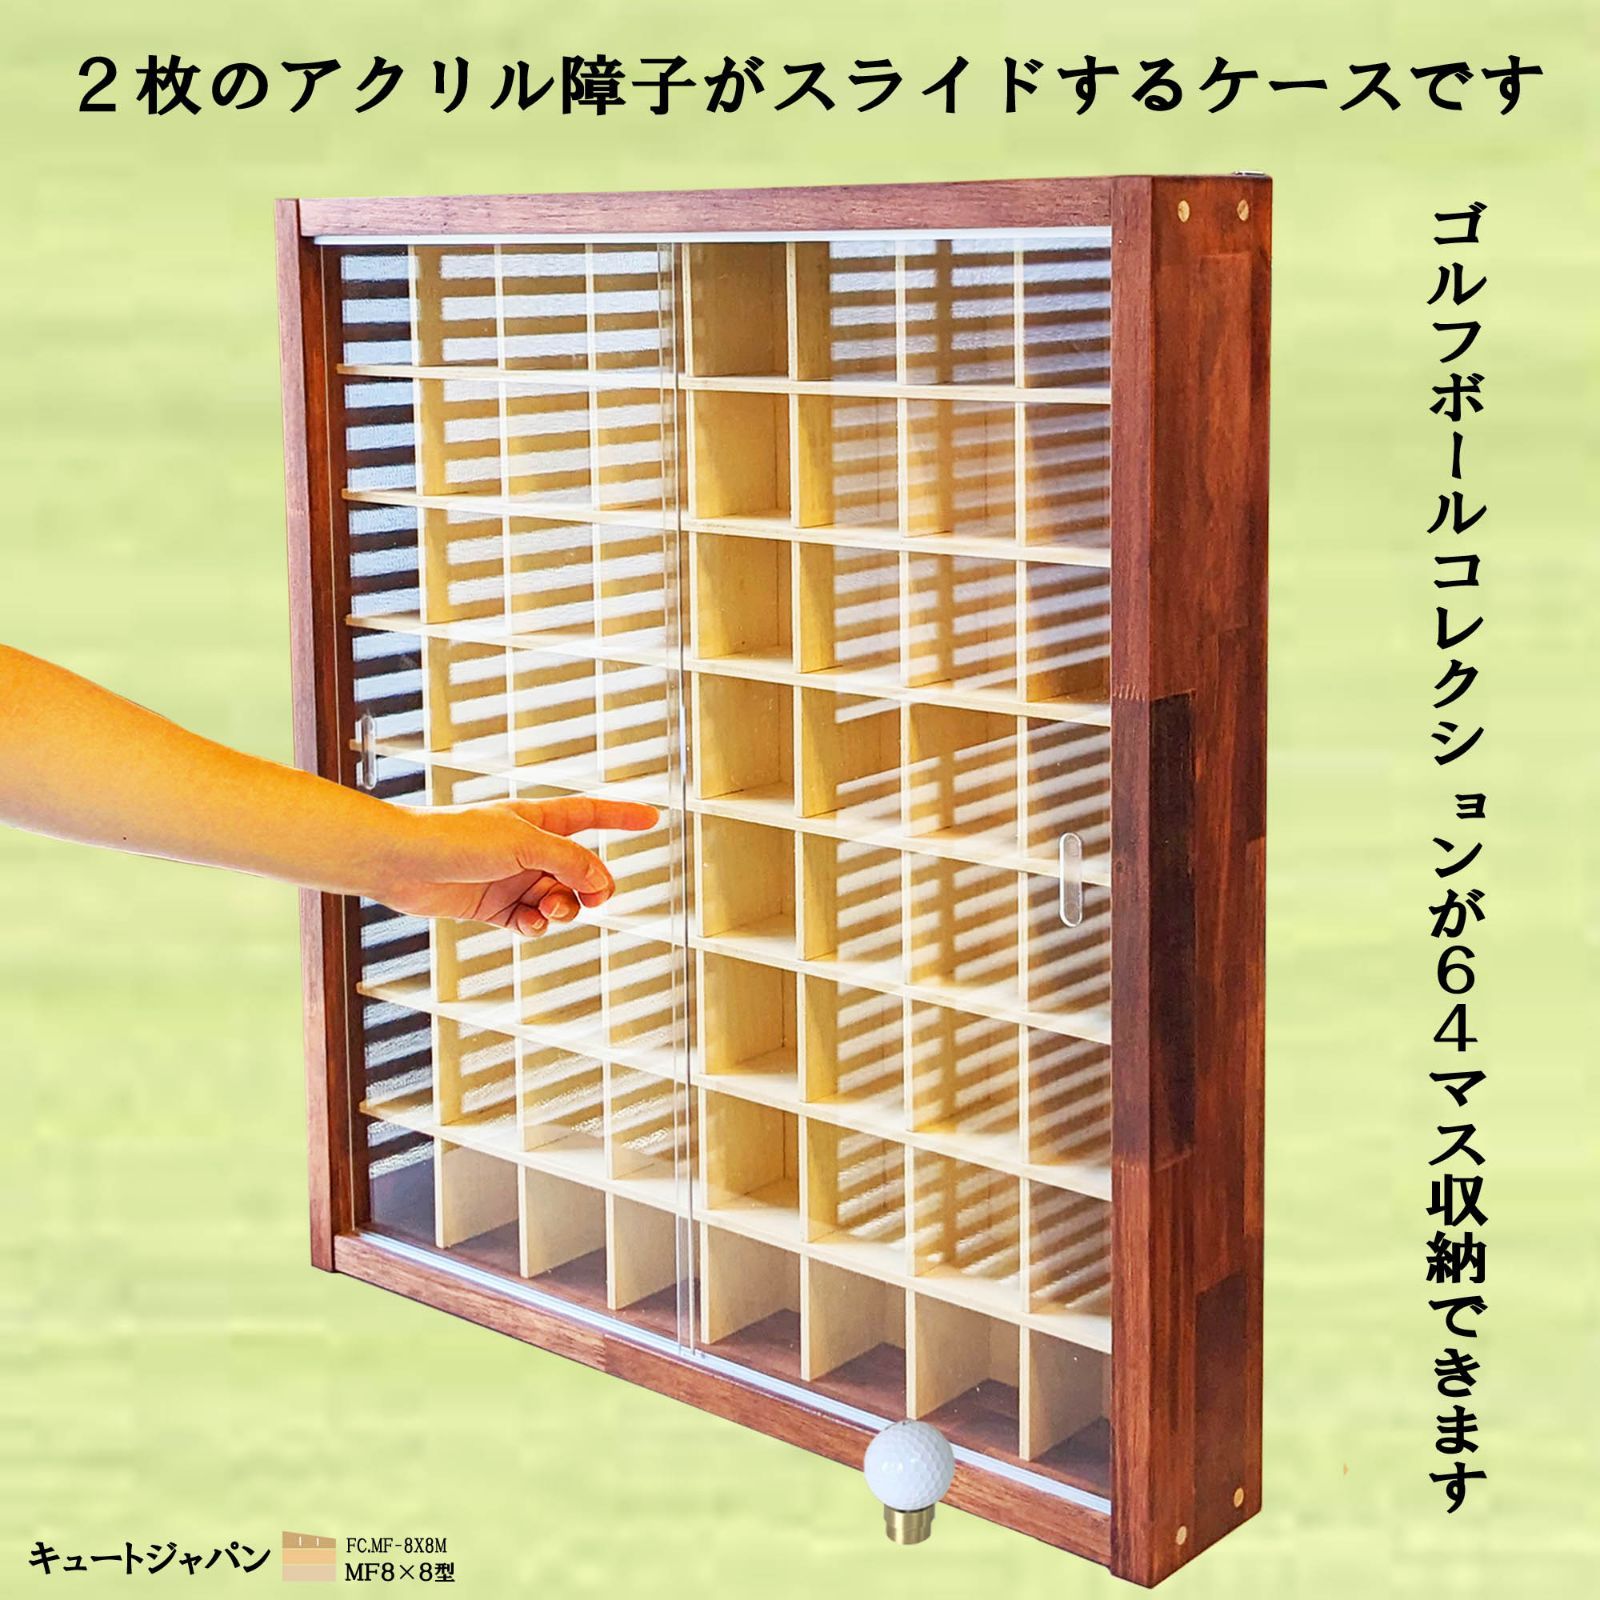 ゴルフボール コレクションケース アクリル障子付 マホガニ色塗装 日本